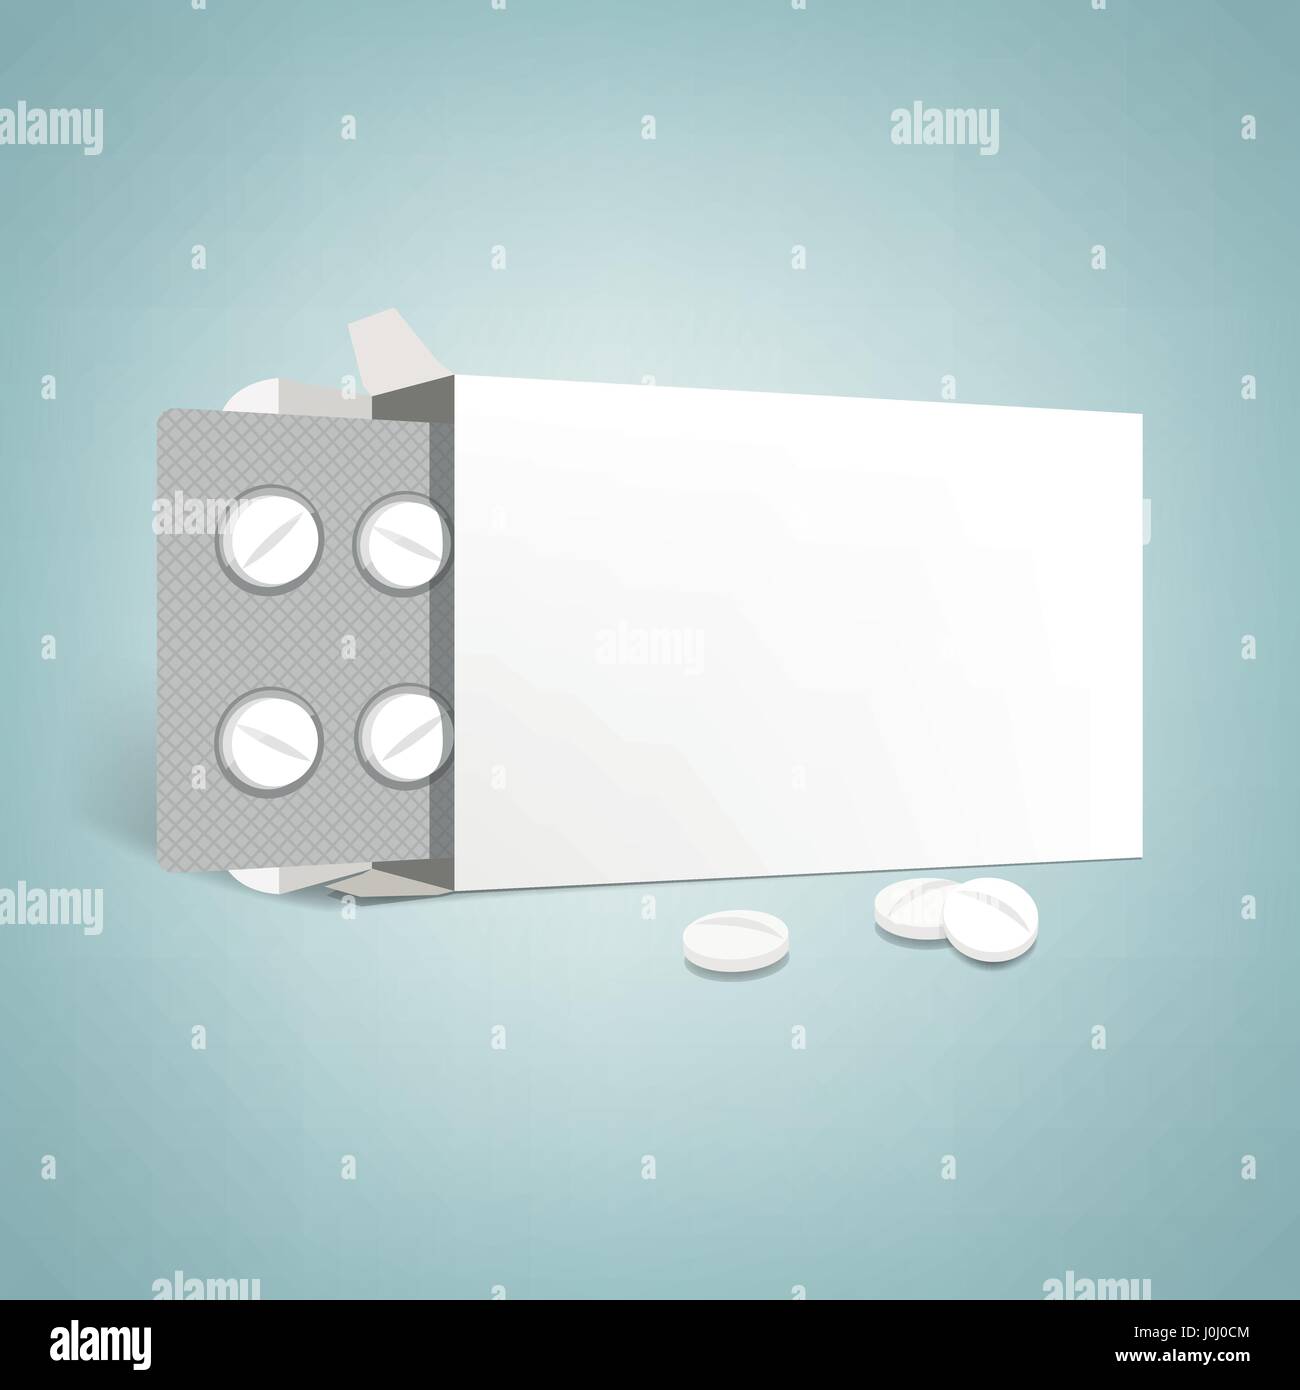 L'emballage pharmaceutique publicité : ouvrez la boîte de médicaments avec des cloques et comprimés, étiquette vierge Illustration de Vecteur